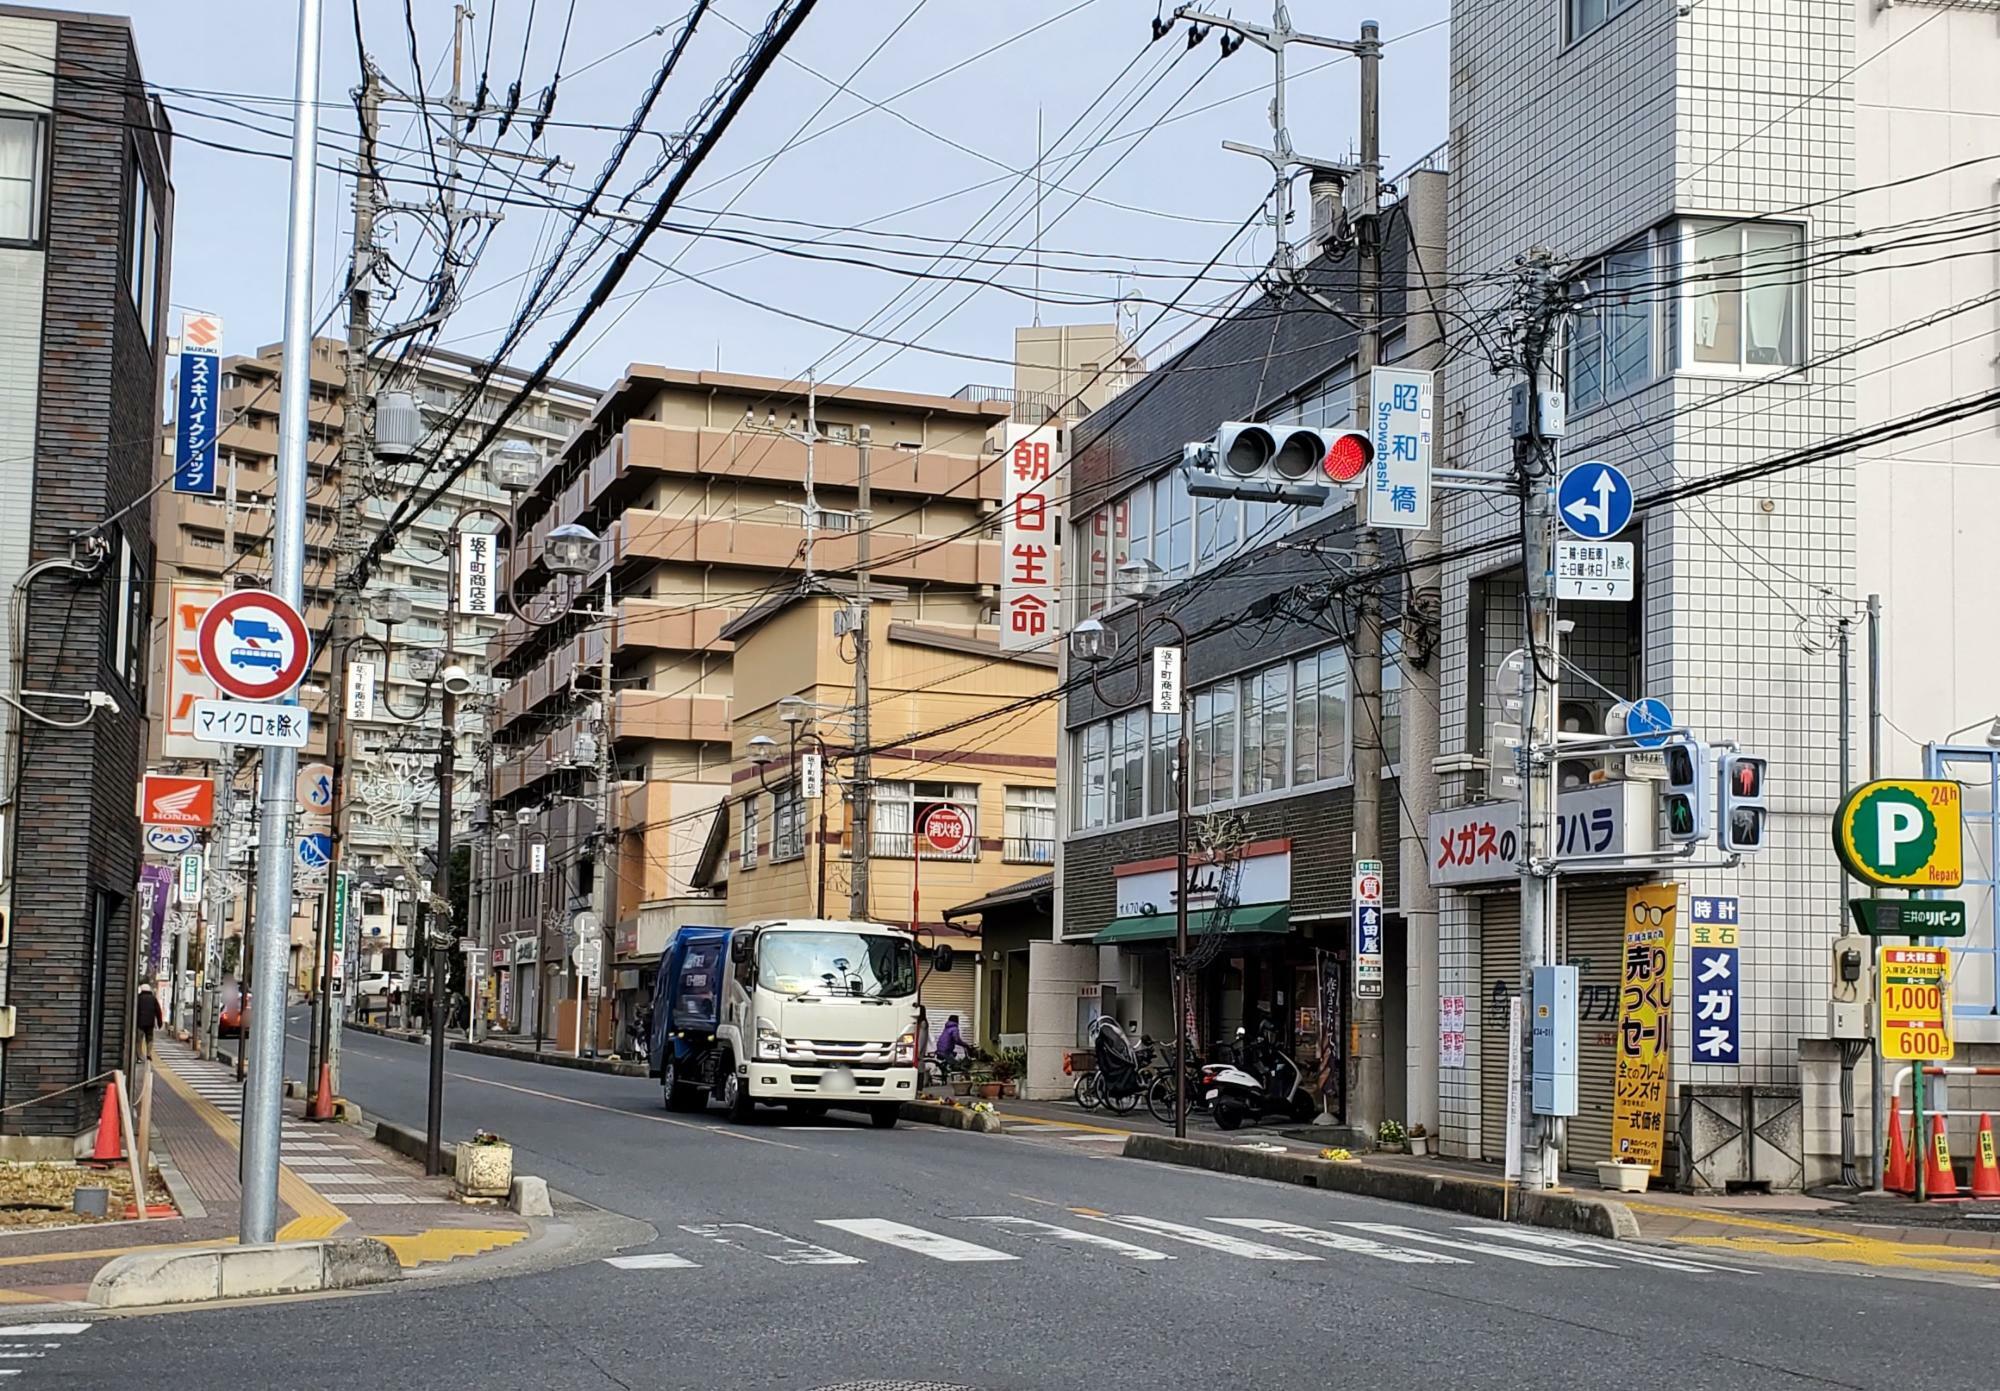 昭和橋交差点、写真の奥に露店が並びます。